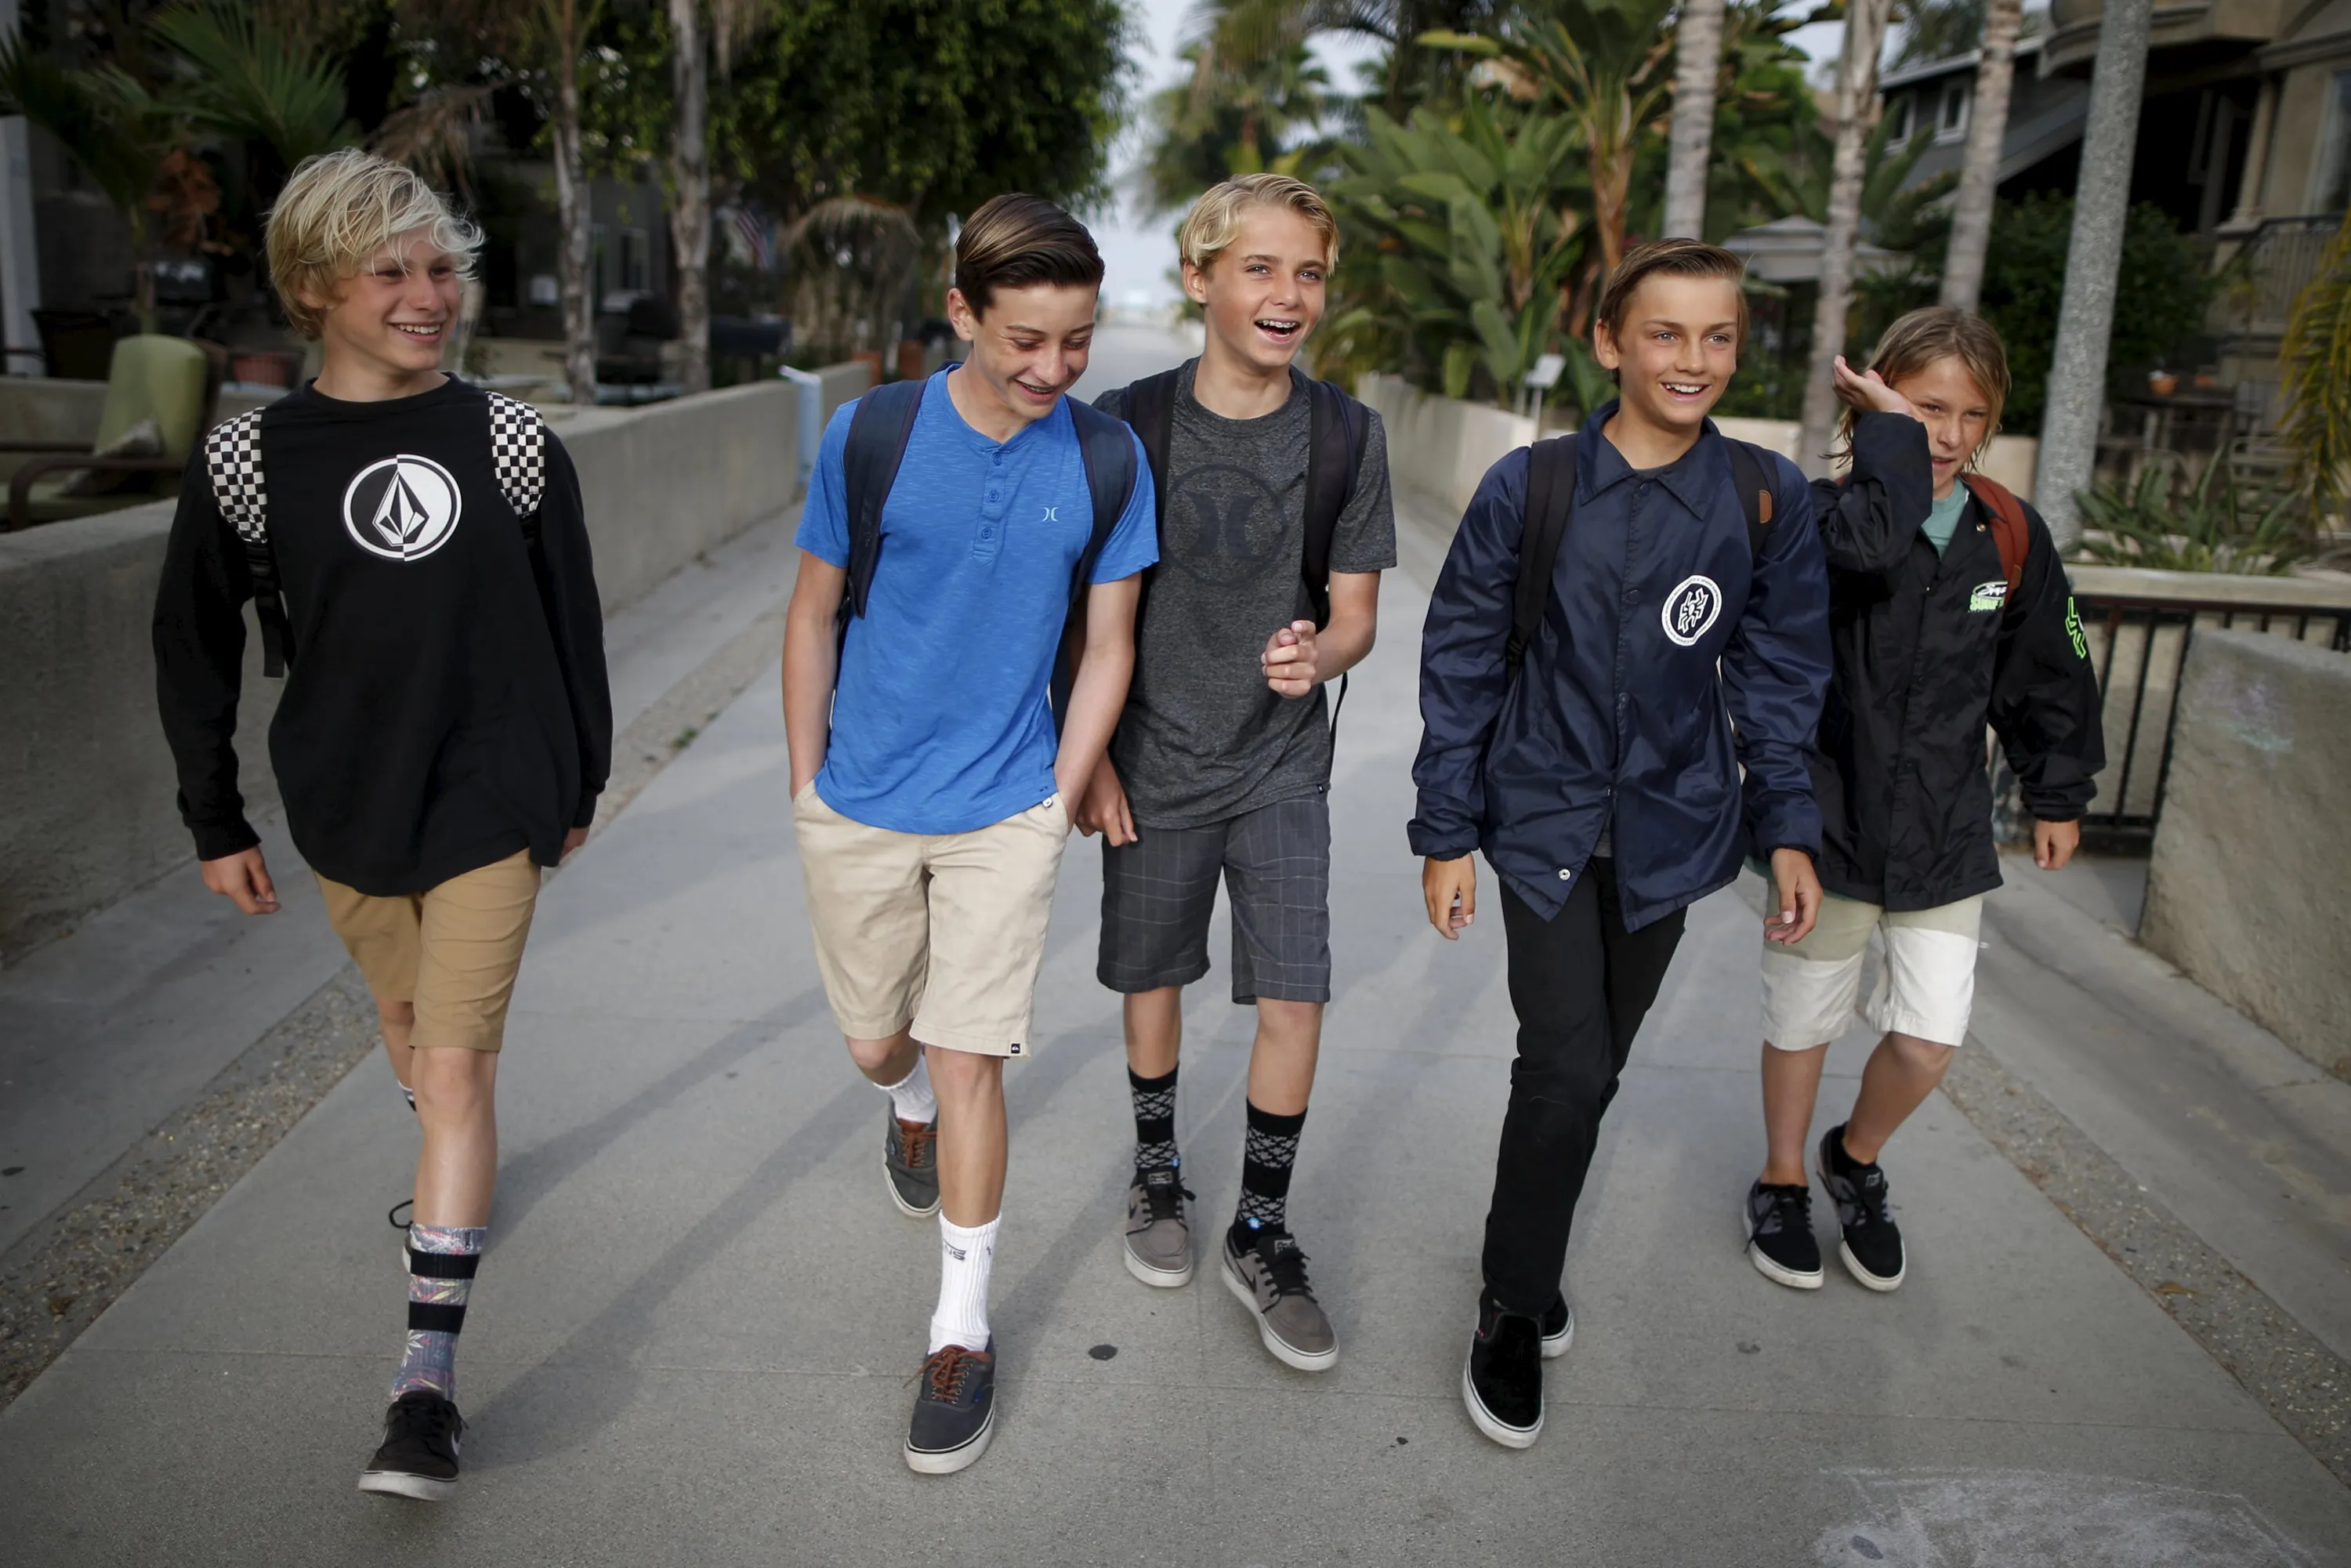 Гулять после школы. Подростки в школе. Друзья мальчики. Мальчик гуляет с друзьями. Прогулка подростков.